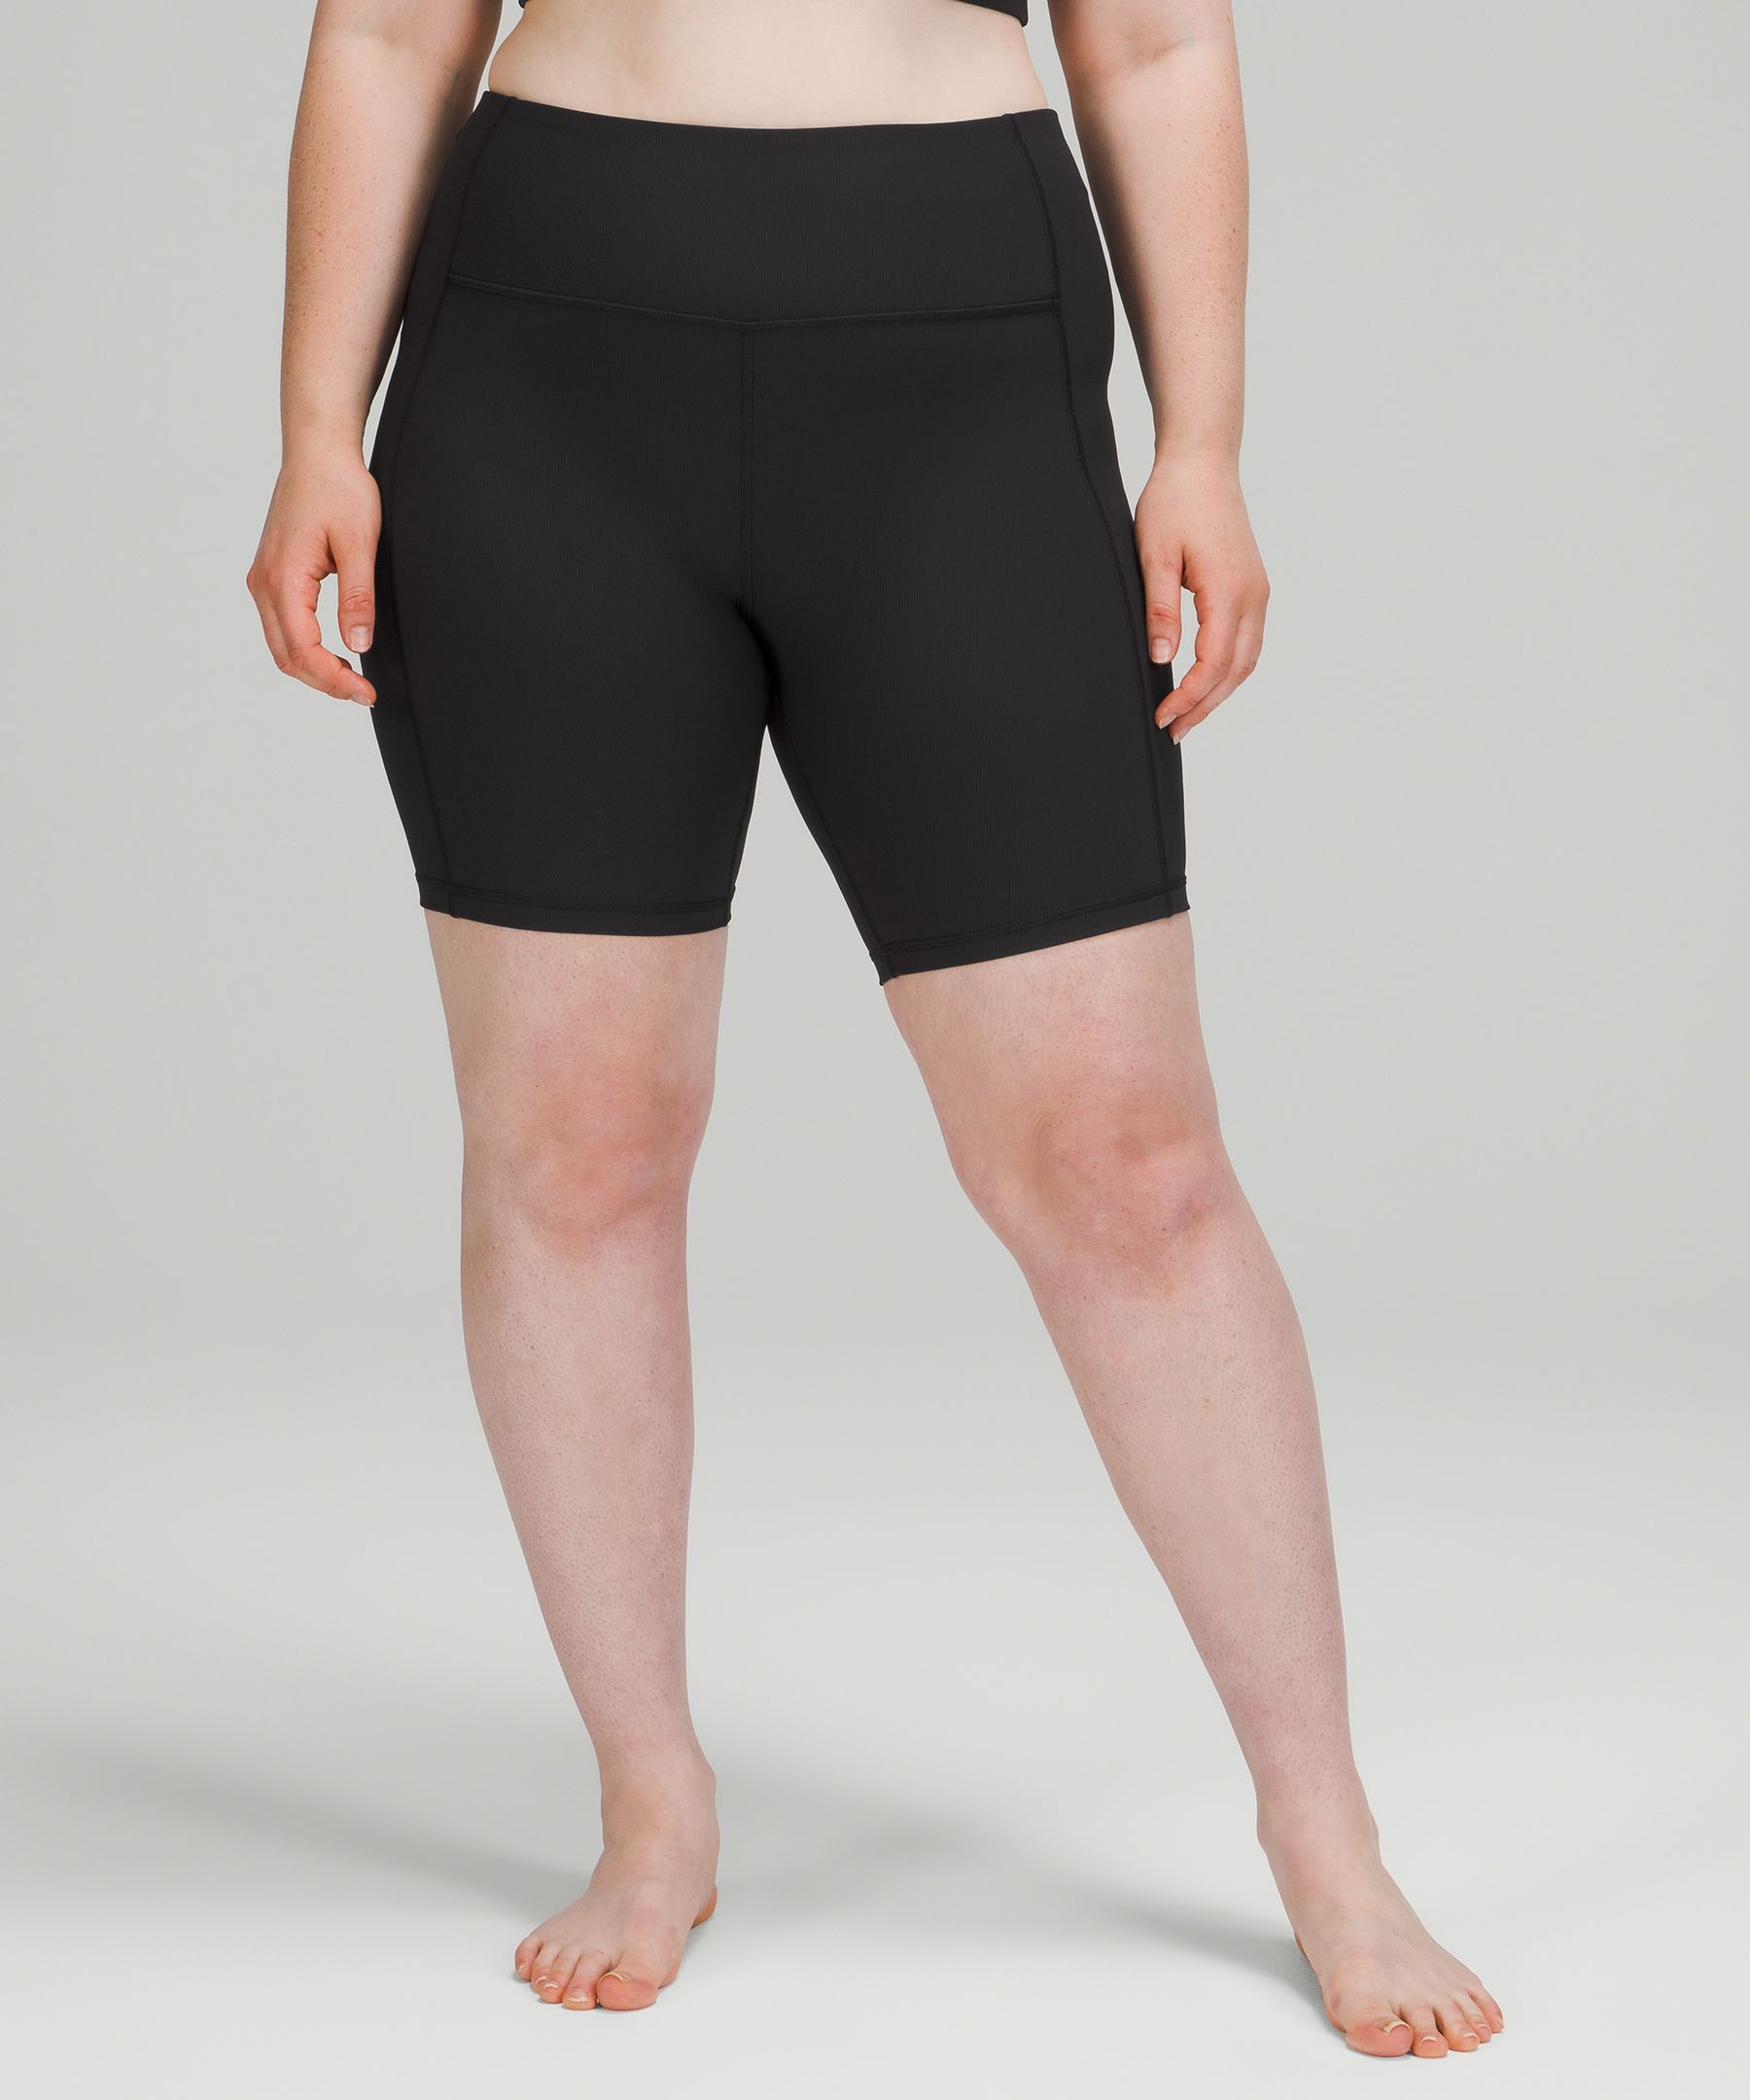 lululemon knee length shorts